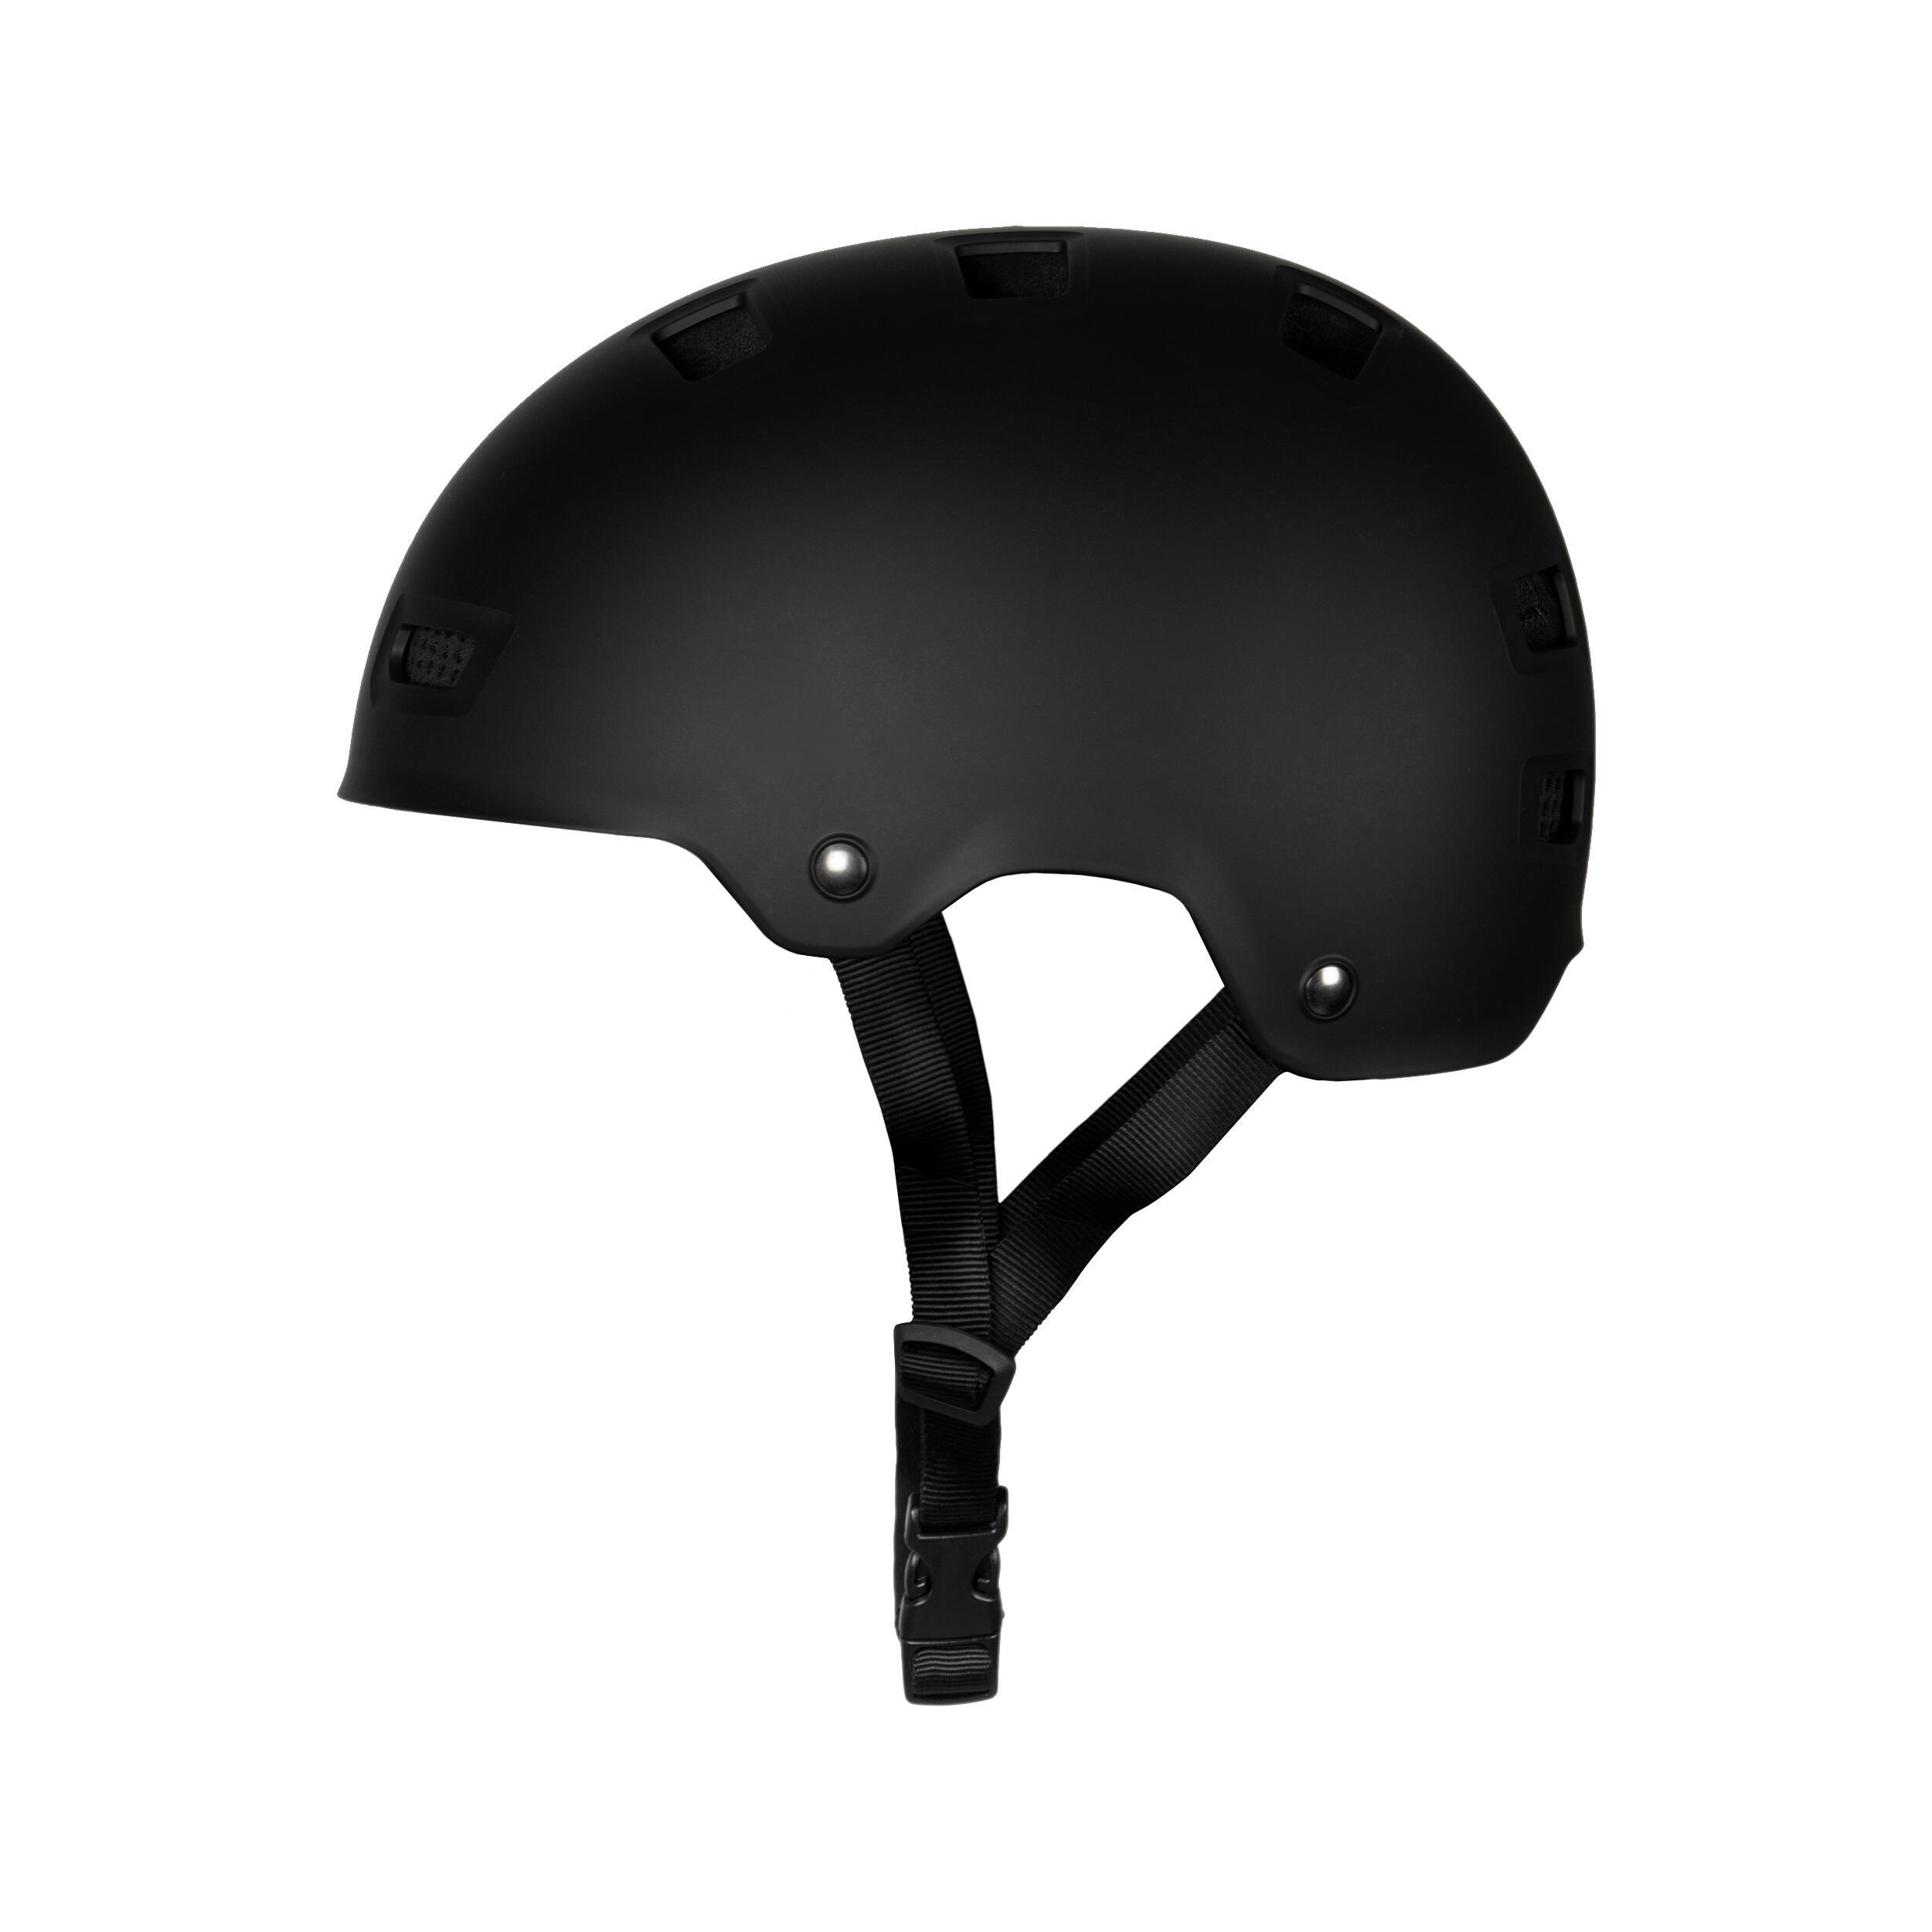 Water sports helmet - 500 Black 3/8